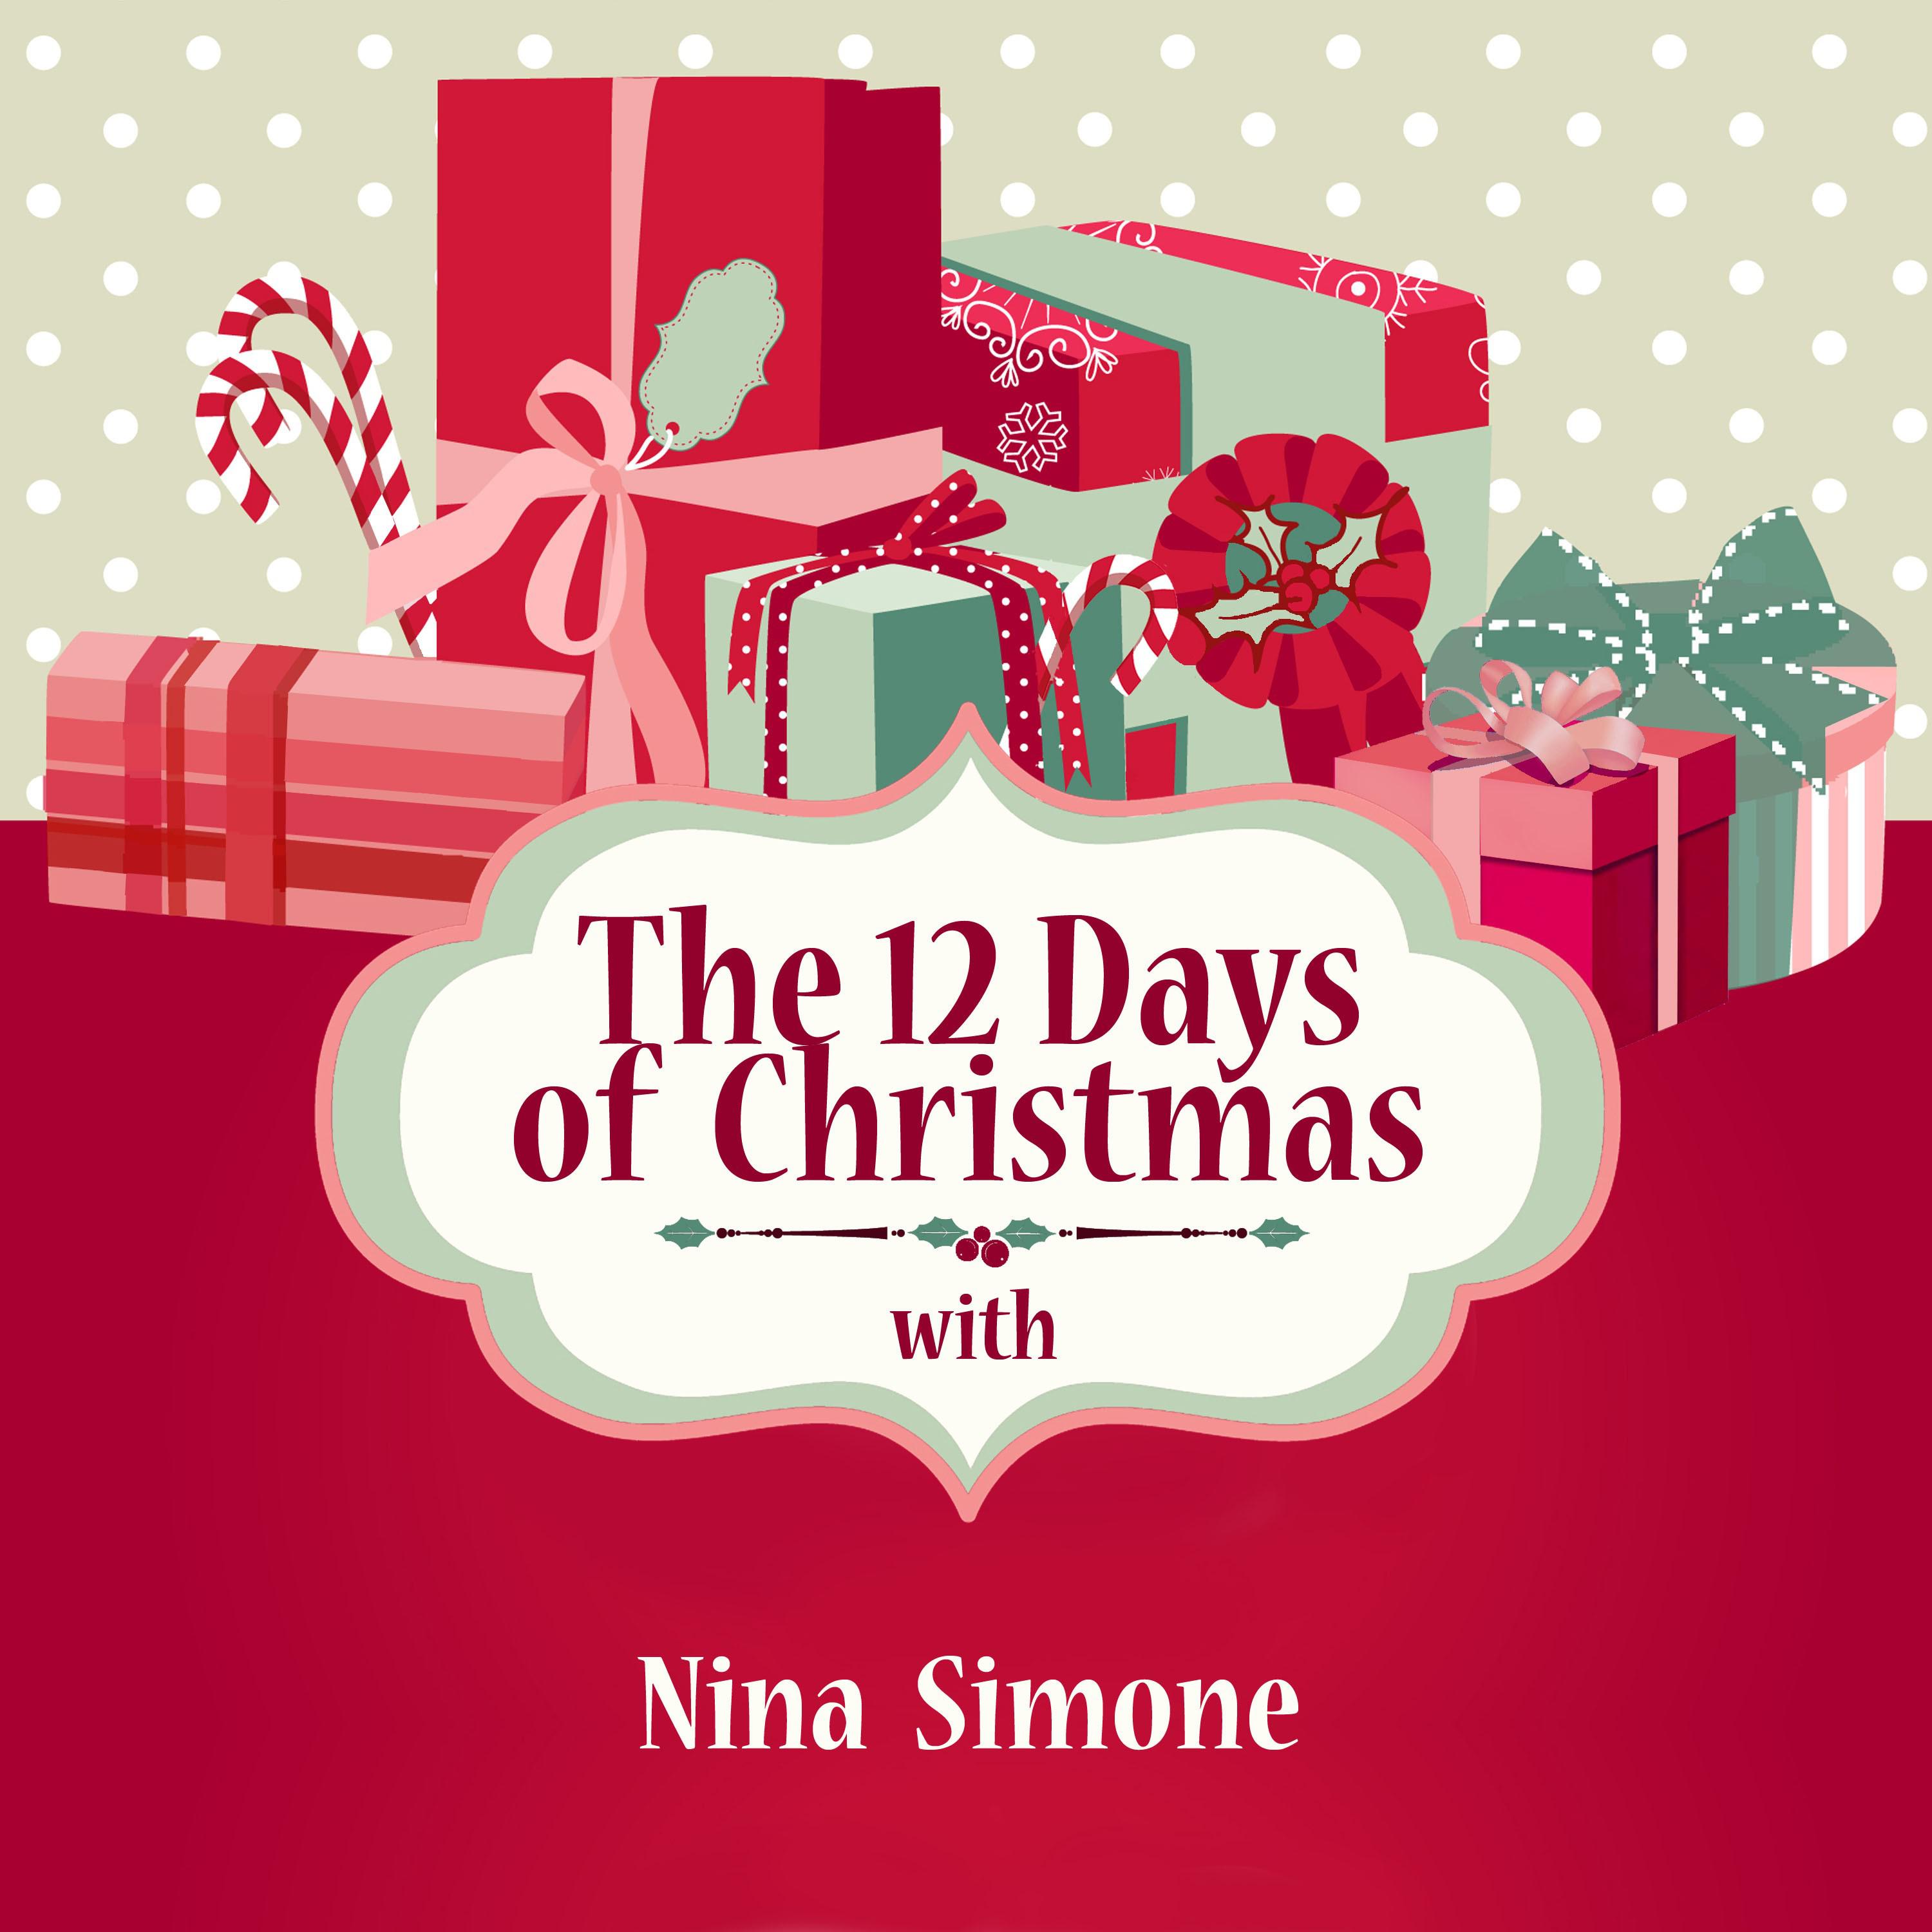 The 12 Days of Christmas with Nina Simone